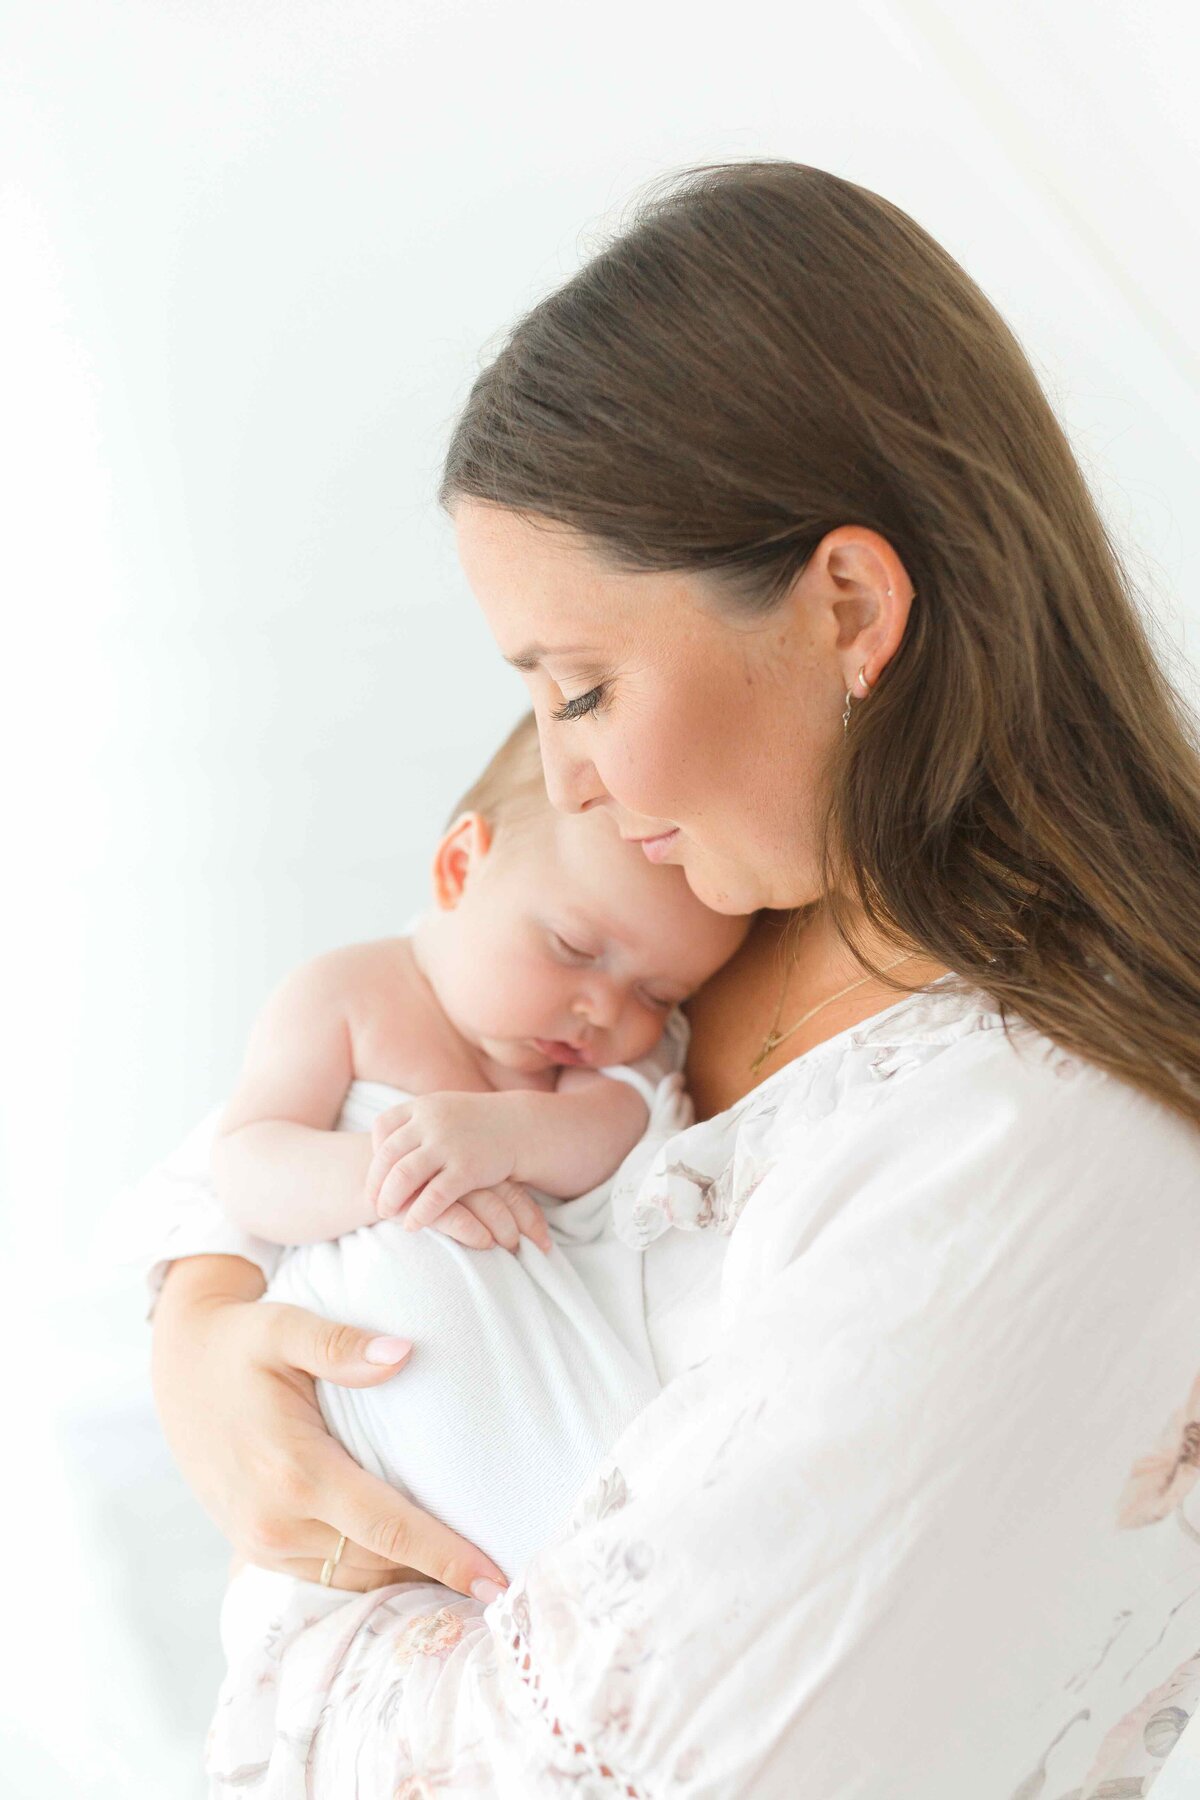 Babyfotoshooting in weiß gehalten mit Mutter und schlafendem Baby im Arm.